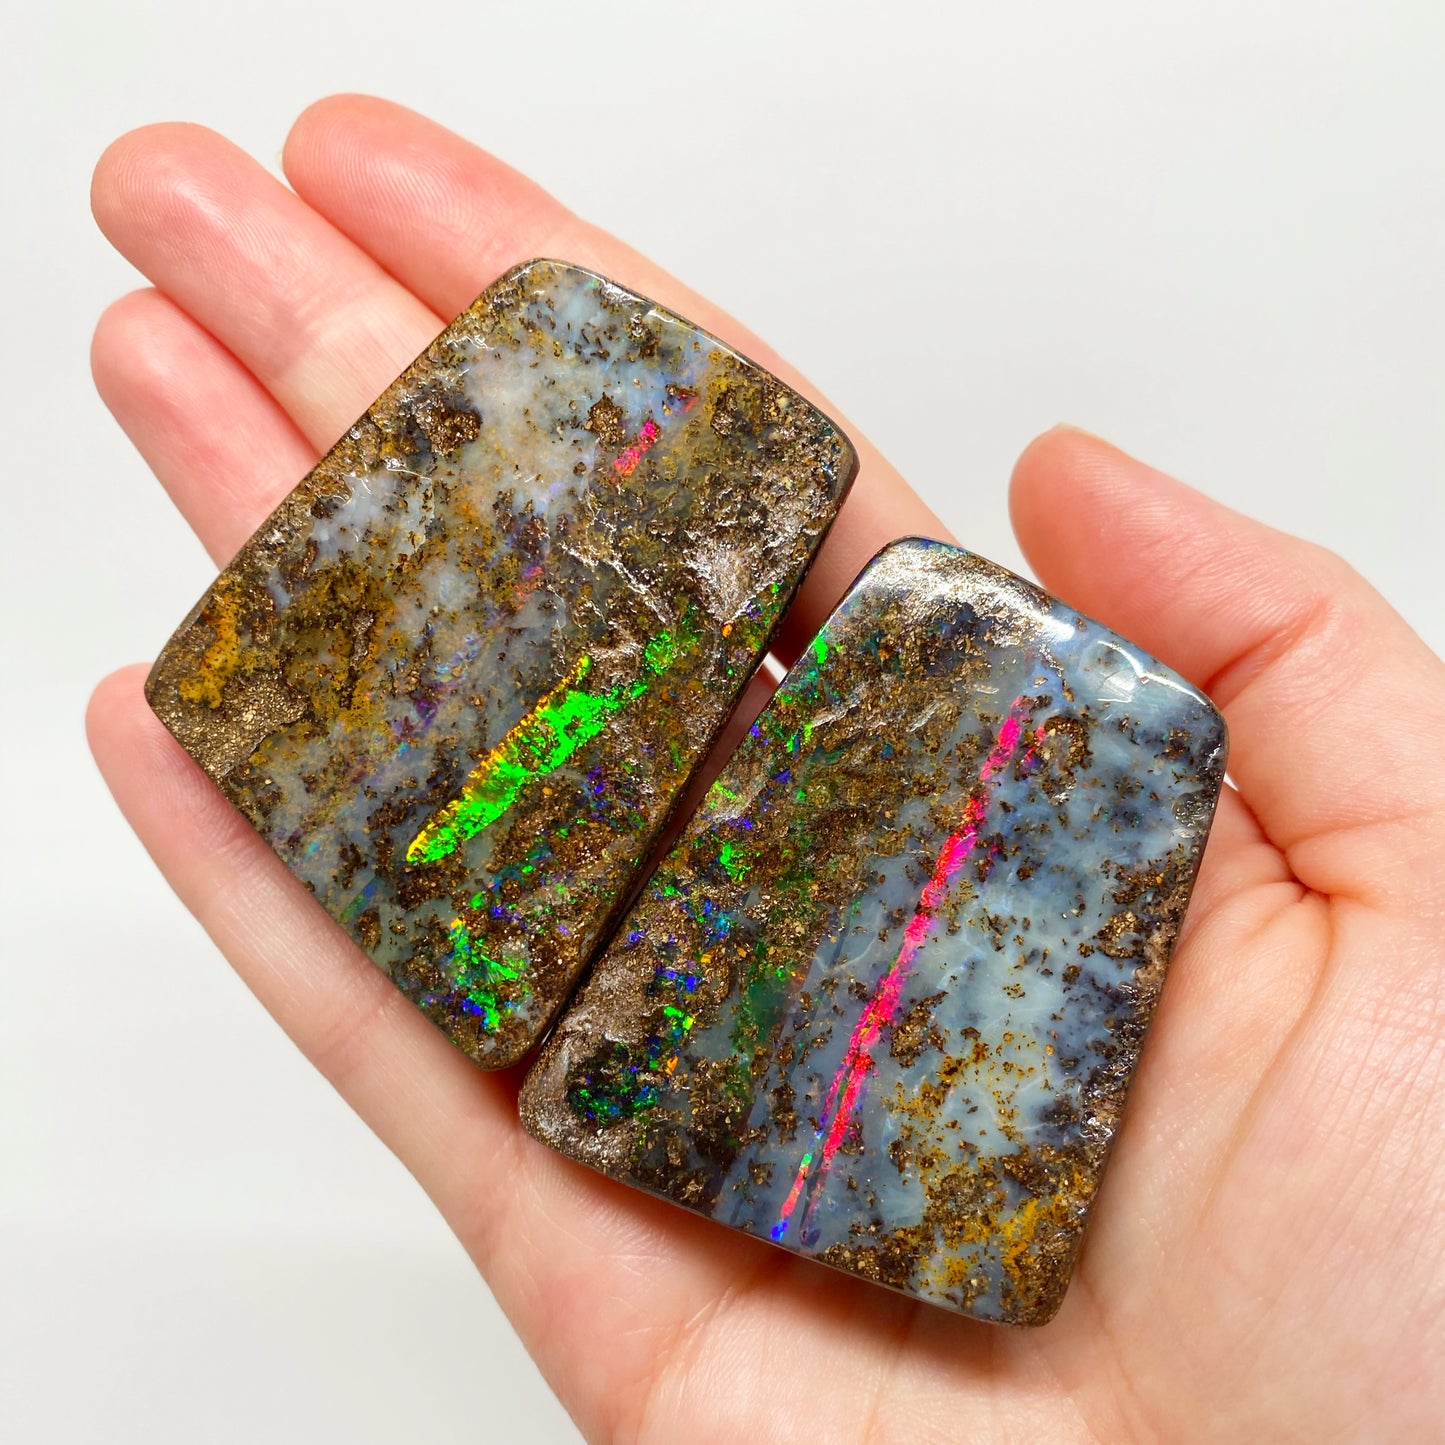 560 Ct large matrix boulder opal 'split' specimen pair